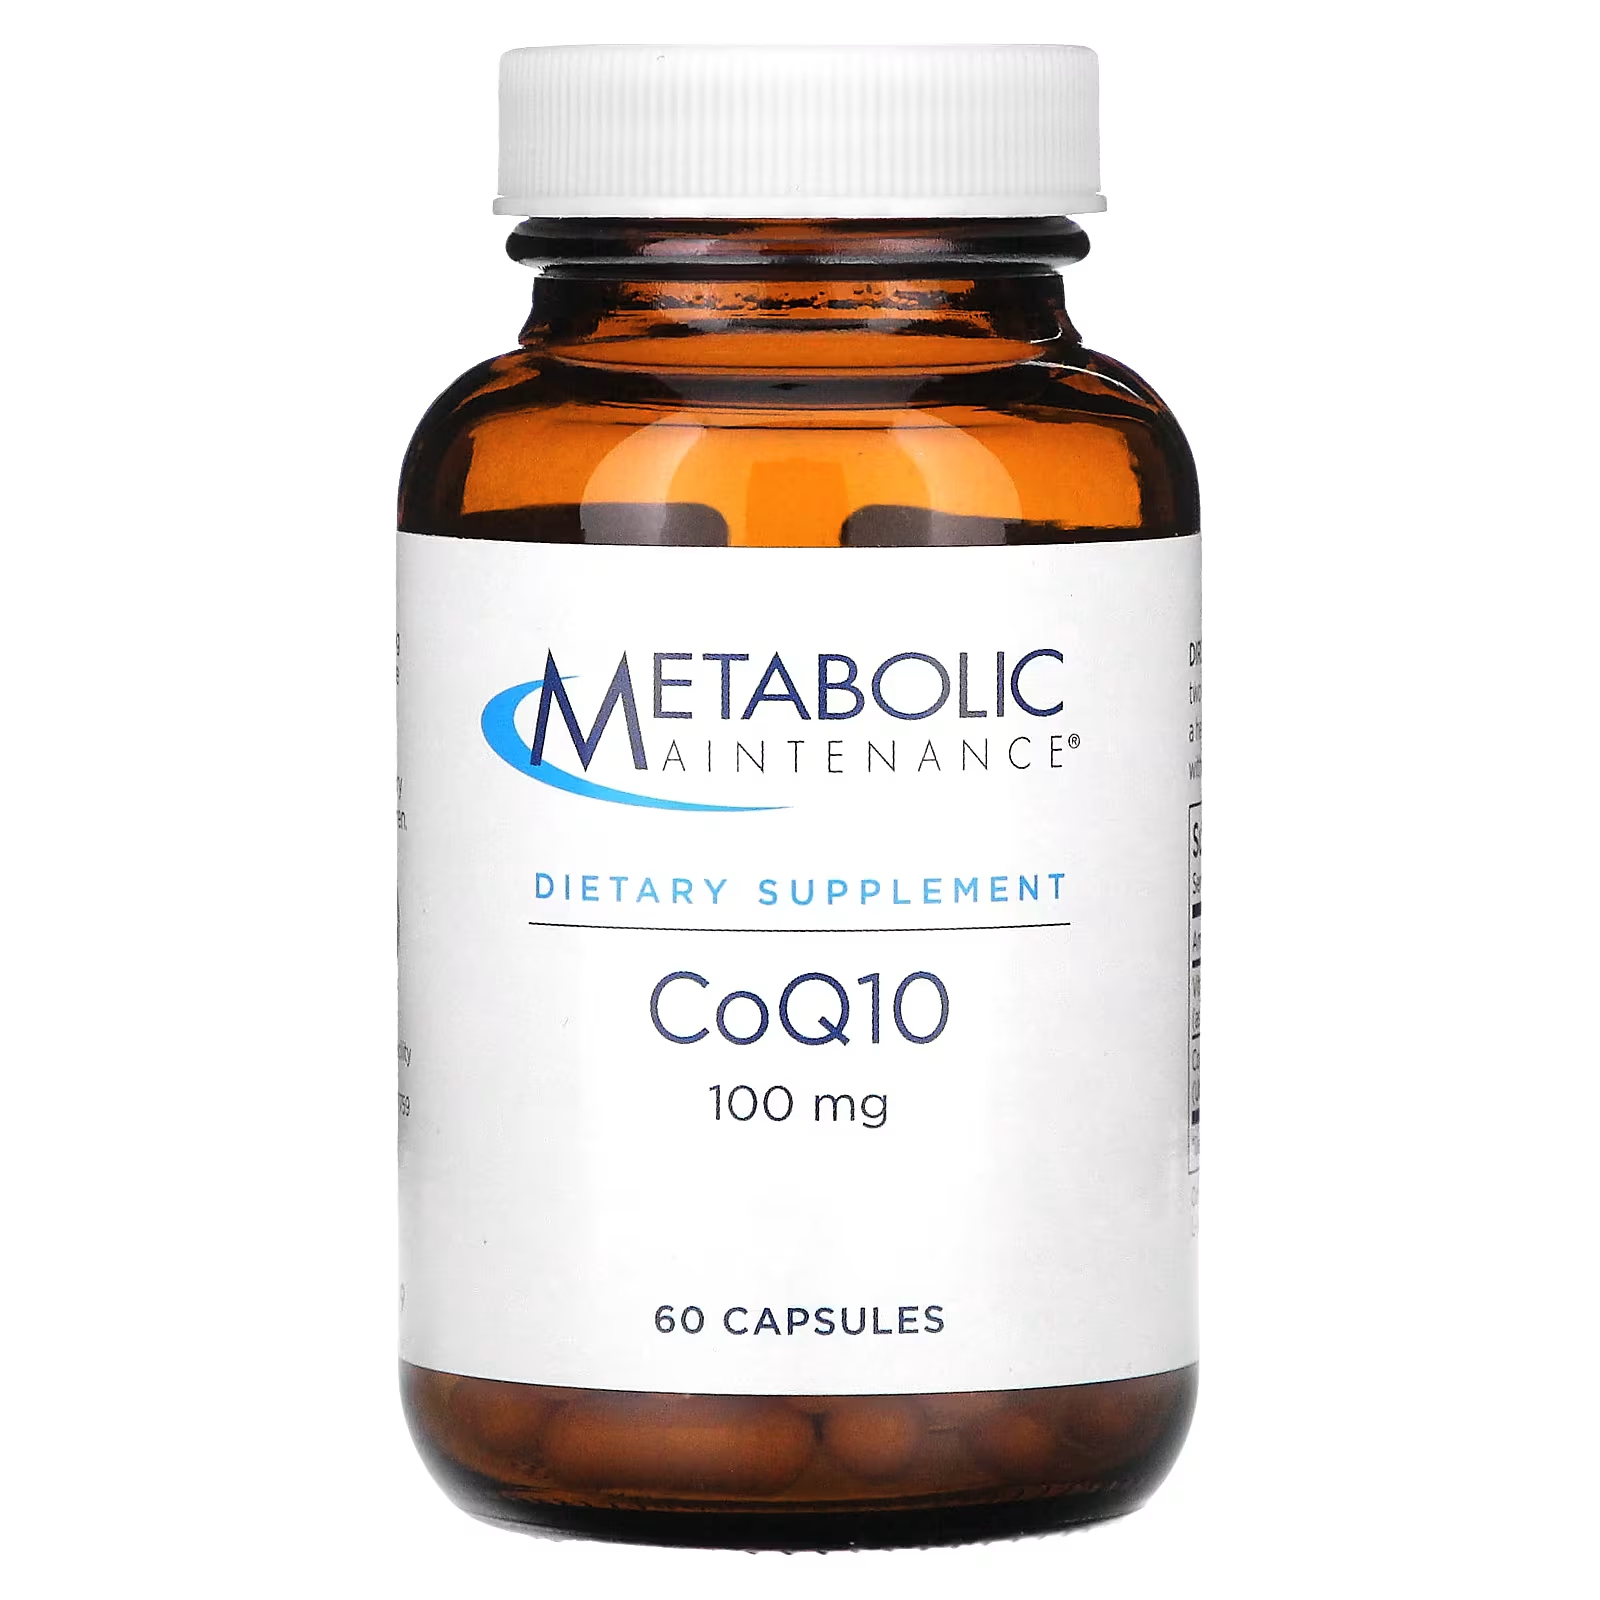 Пищевая добавка Metabolic Maintenance CoQ10, 60 капсул метаболическое обслуживание coq10 порошок апельсина 3 9 унции 110 г metabolic maintenance